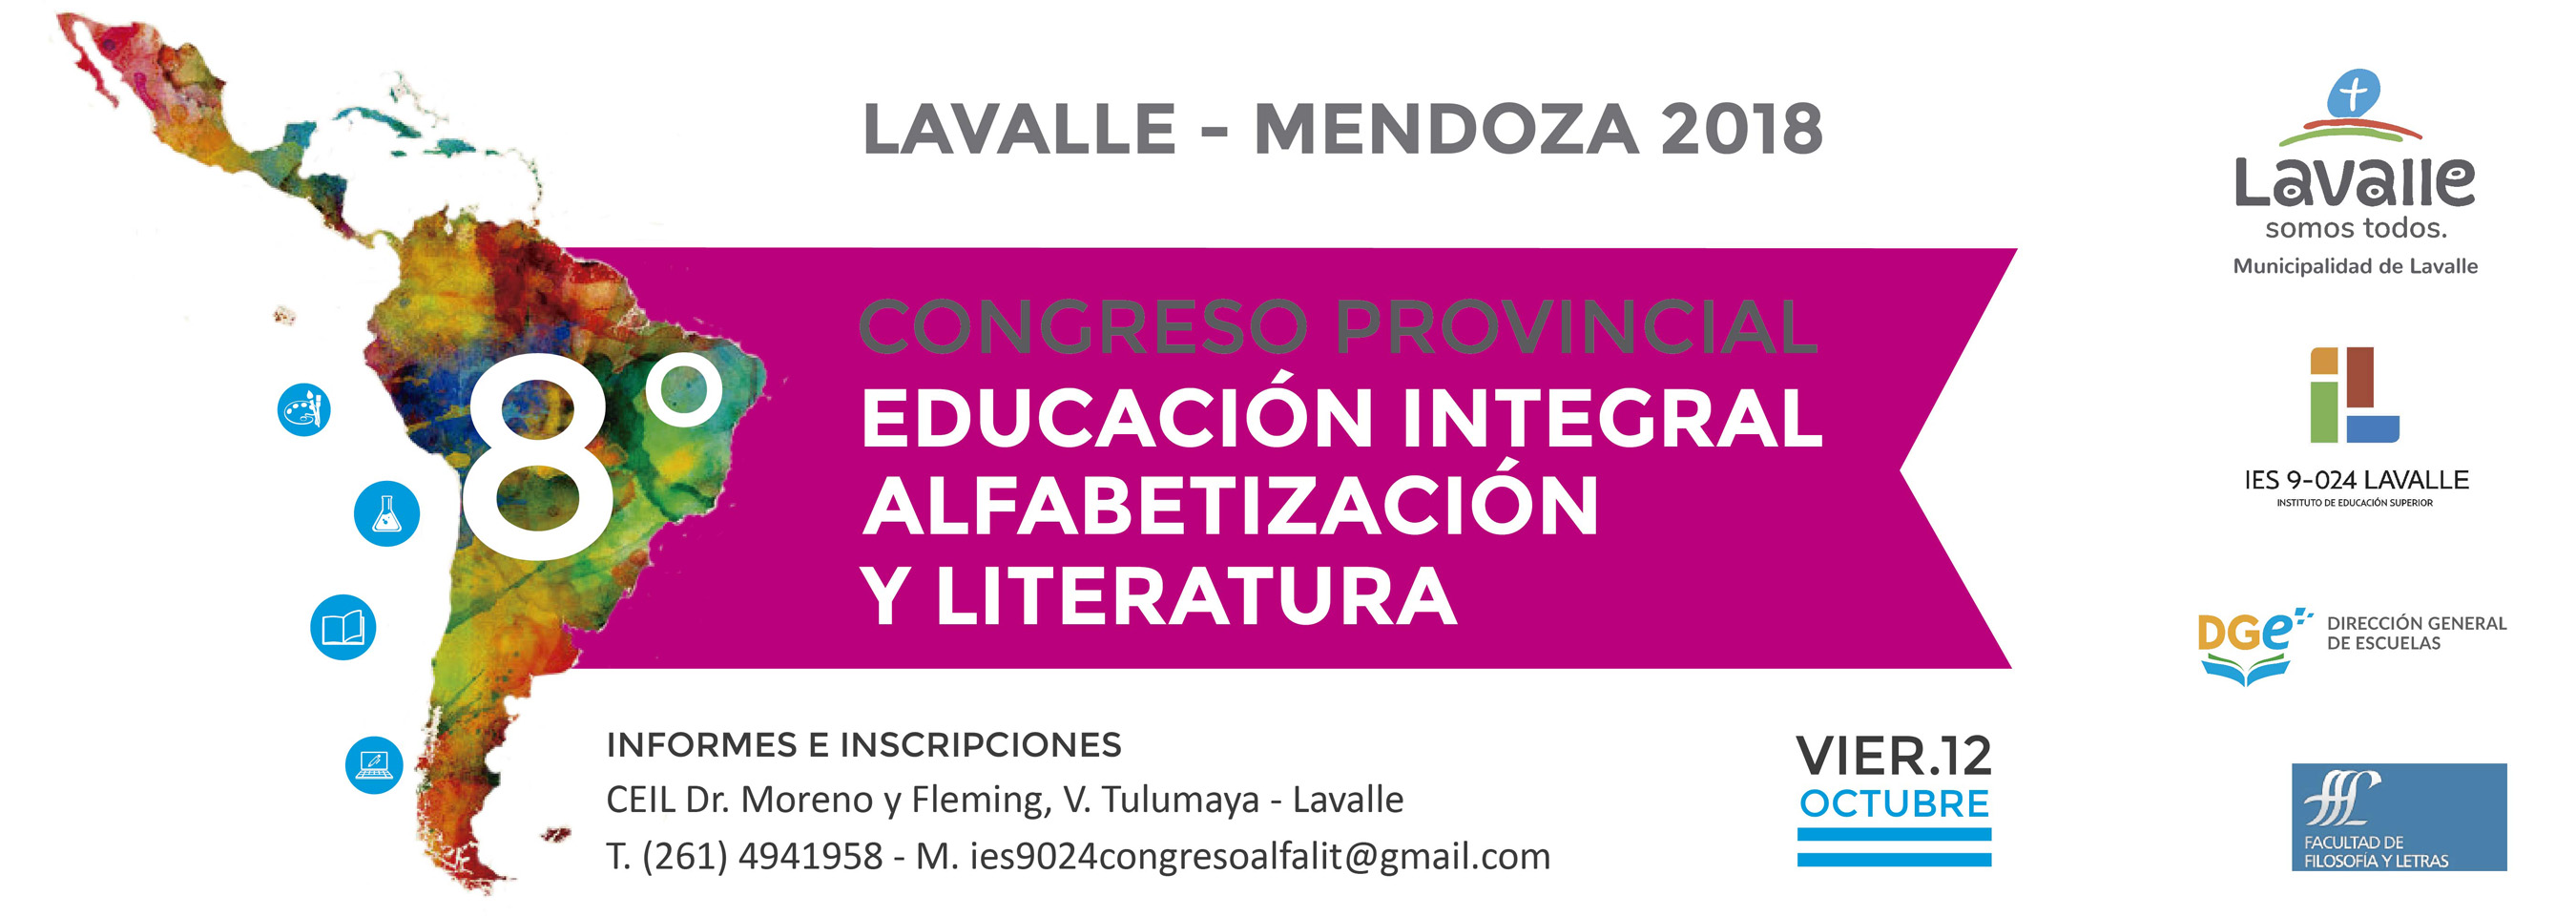 8º Congreso provincial de educación integral, alfabetización y literatura